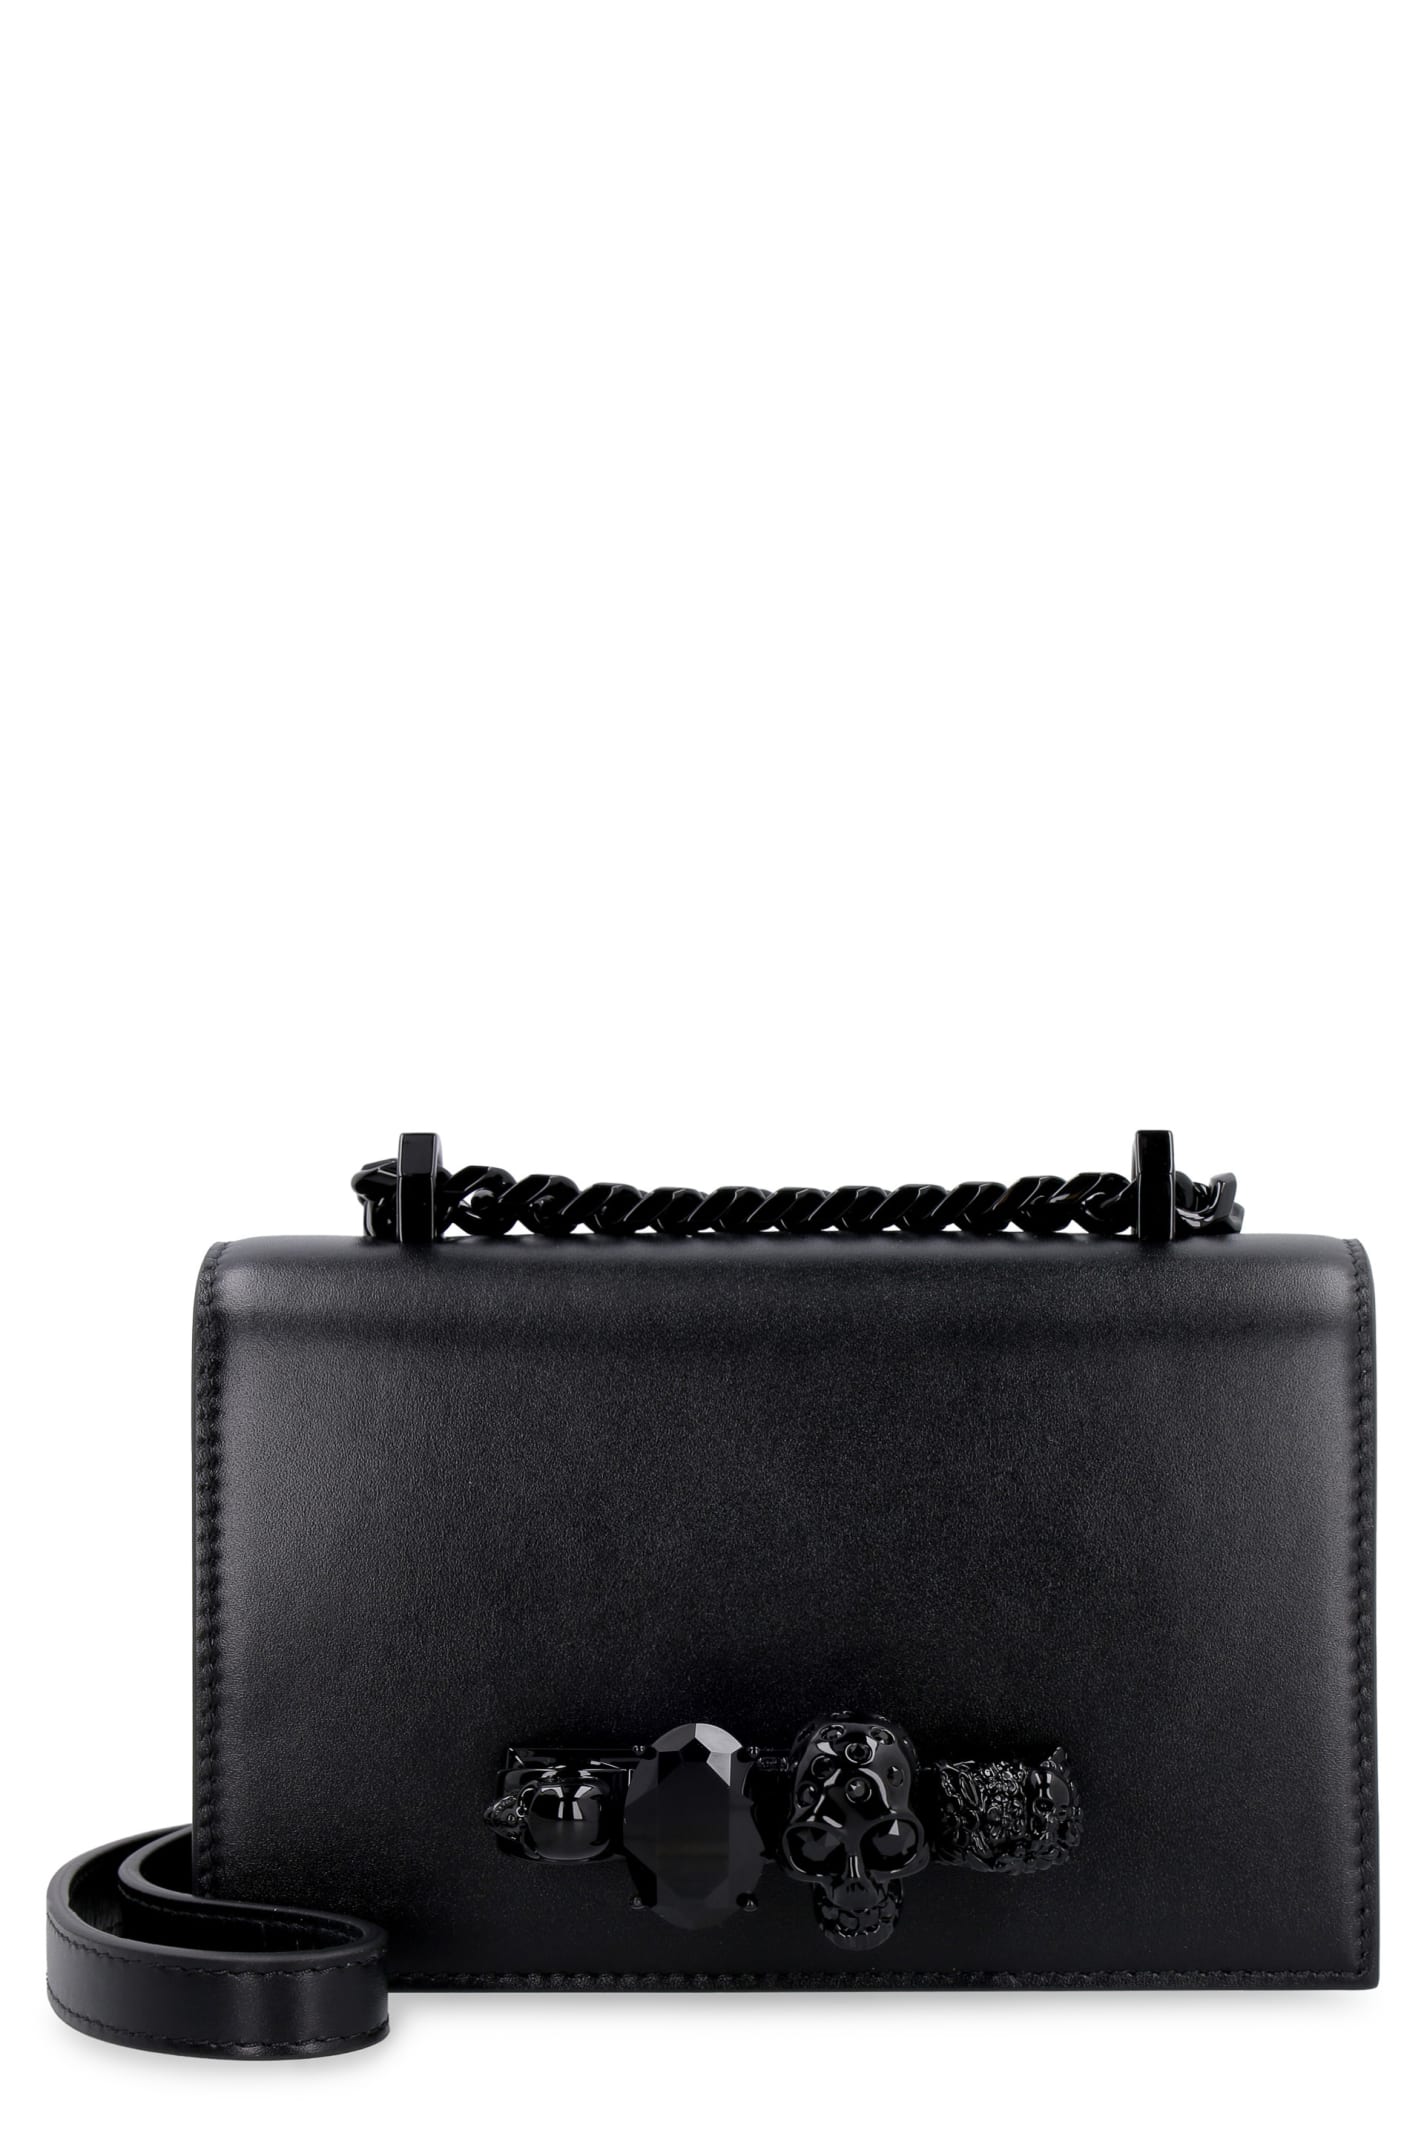 Alexander McQueen Jewelled Satchel Leather Mini-bag